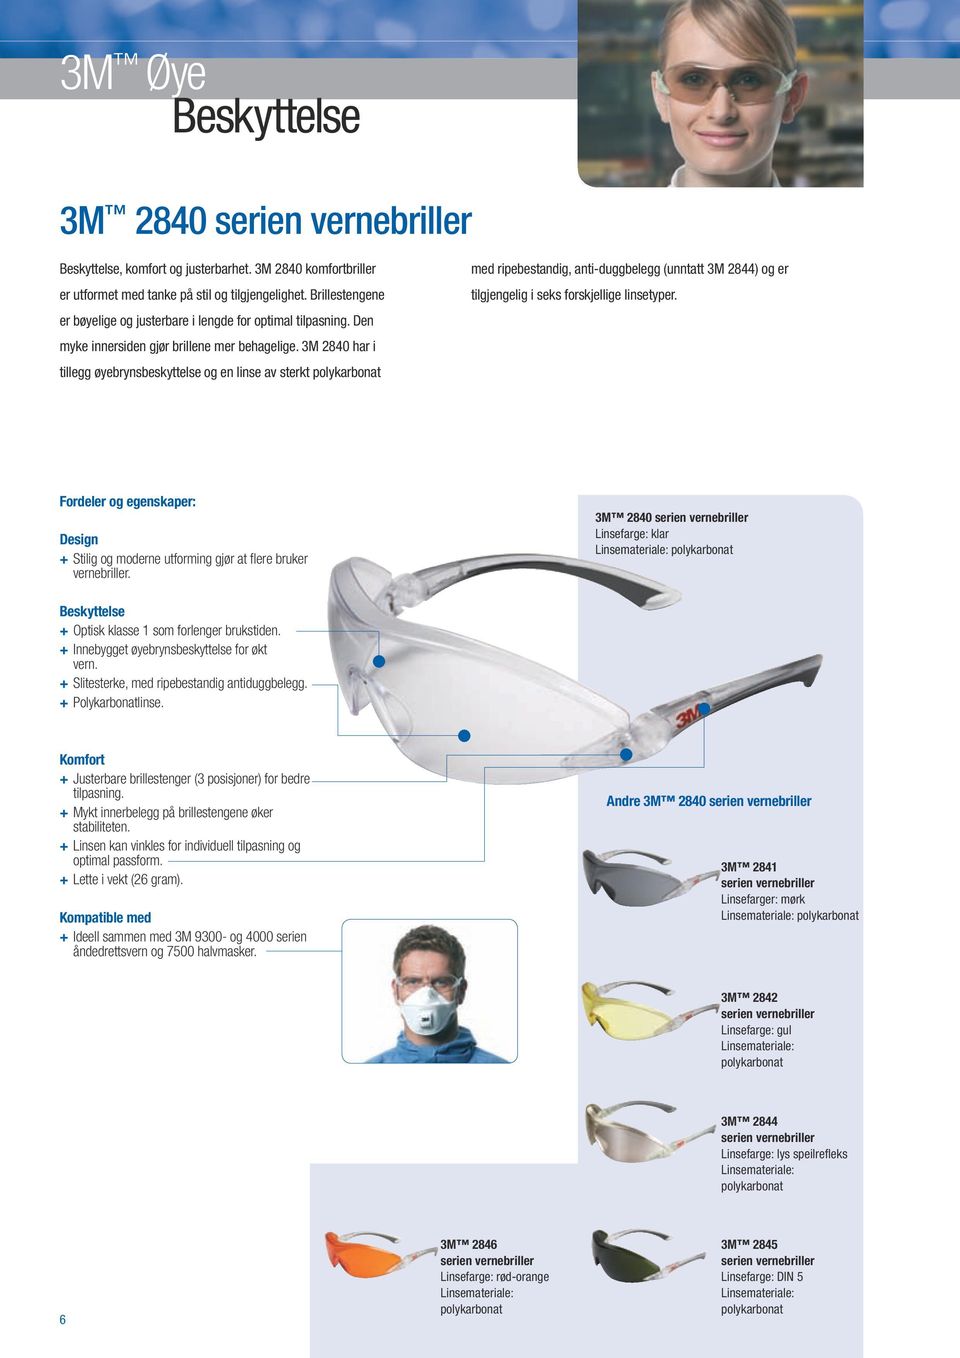 3M 2840 har i tillegg øyebrynsbeskyttelse og en linse av sterkt med ripebestandig, anti-duggbelegg (unntatt 3M 2844) og er tilgjengelig i seks forskjellige linsetyper.